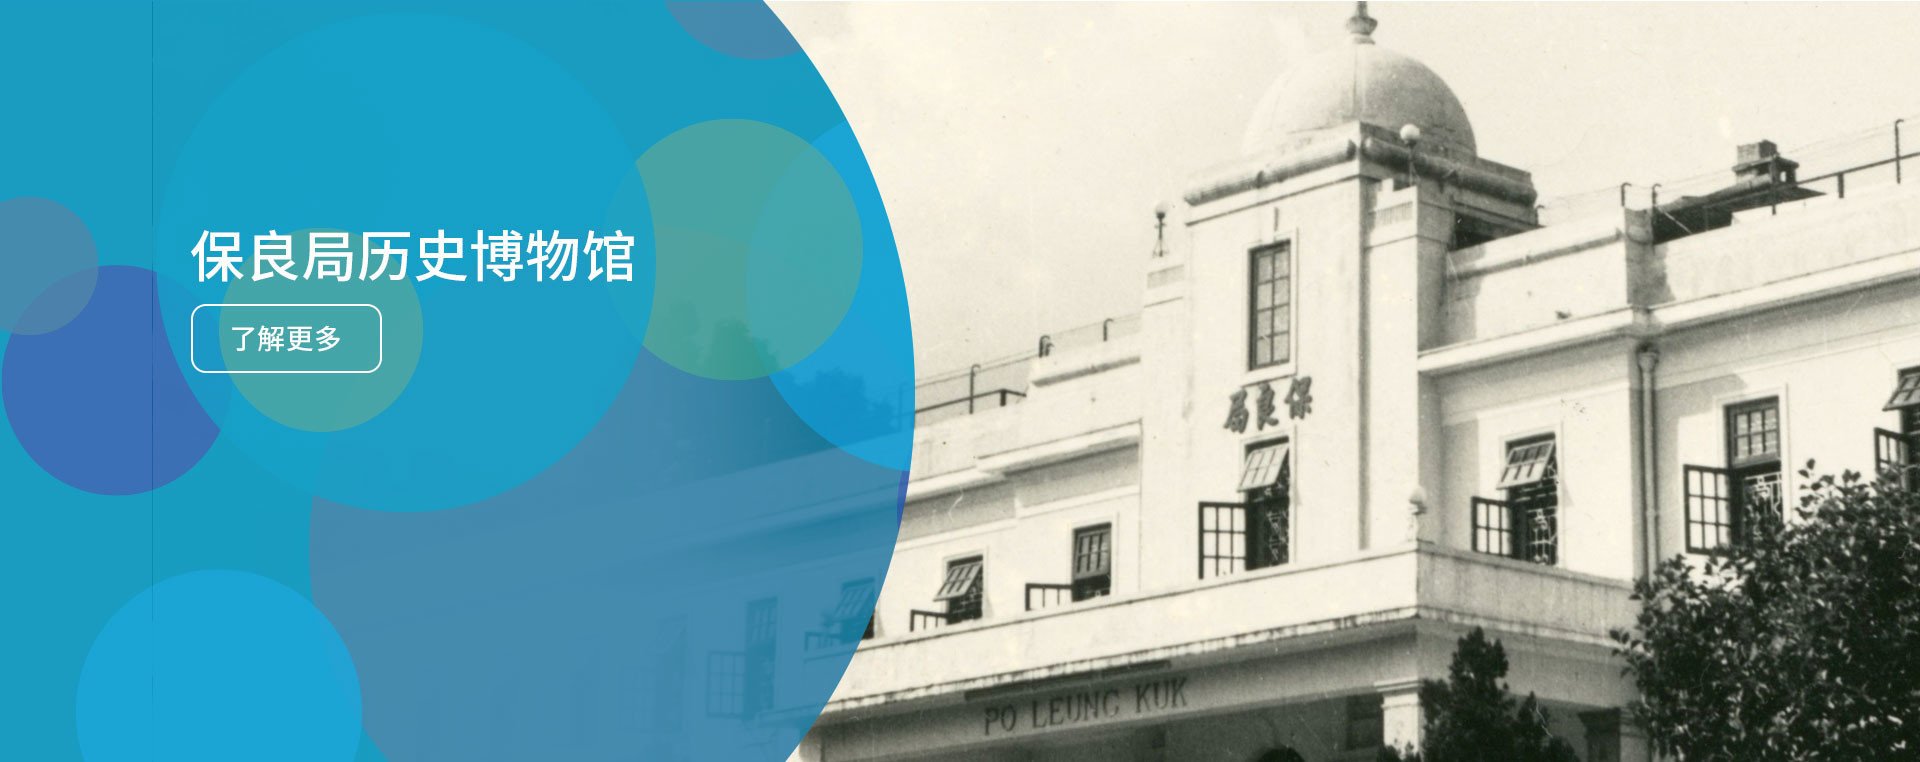 保良局文化服务 - 了解保良局历史，见证香港的成长